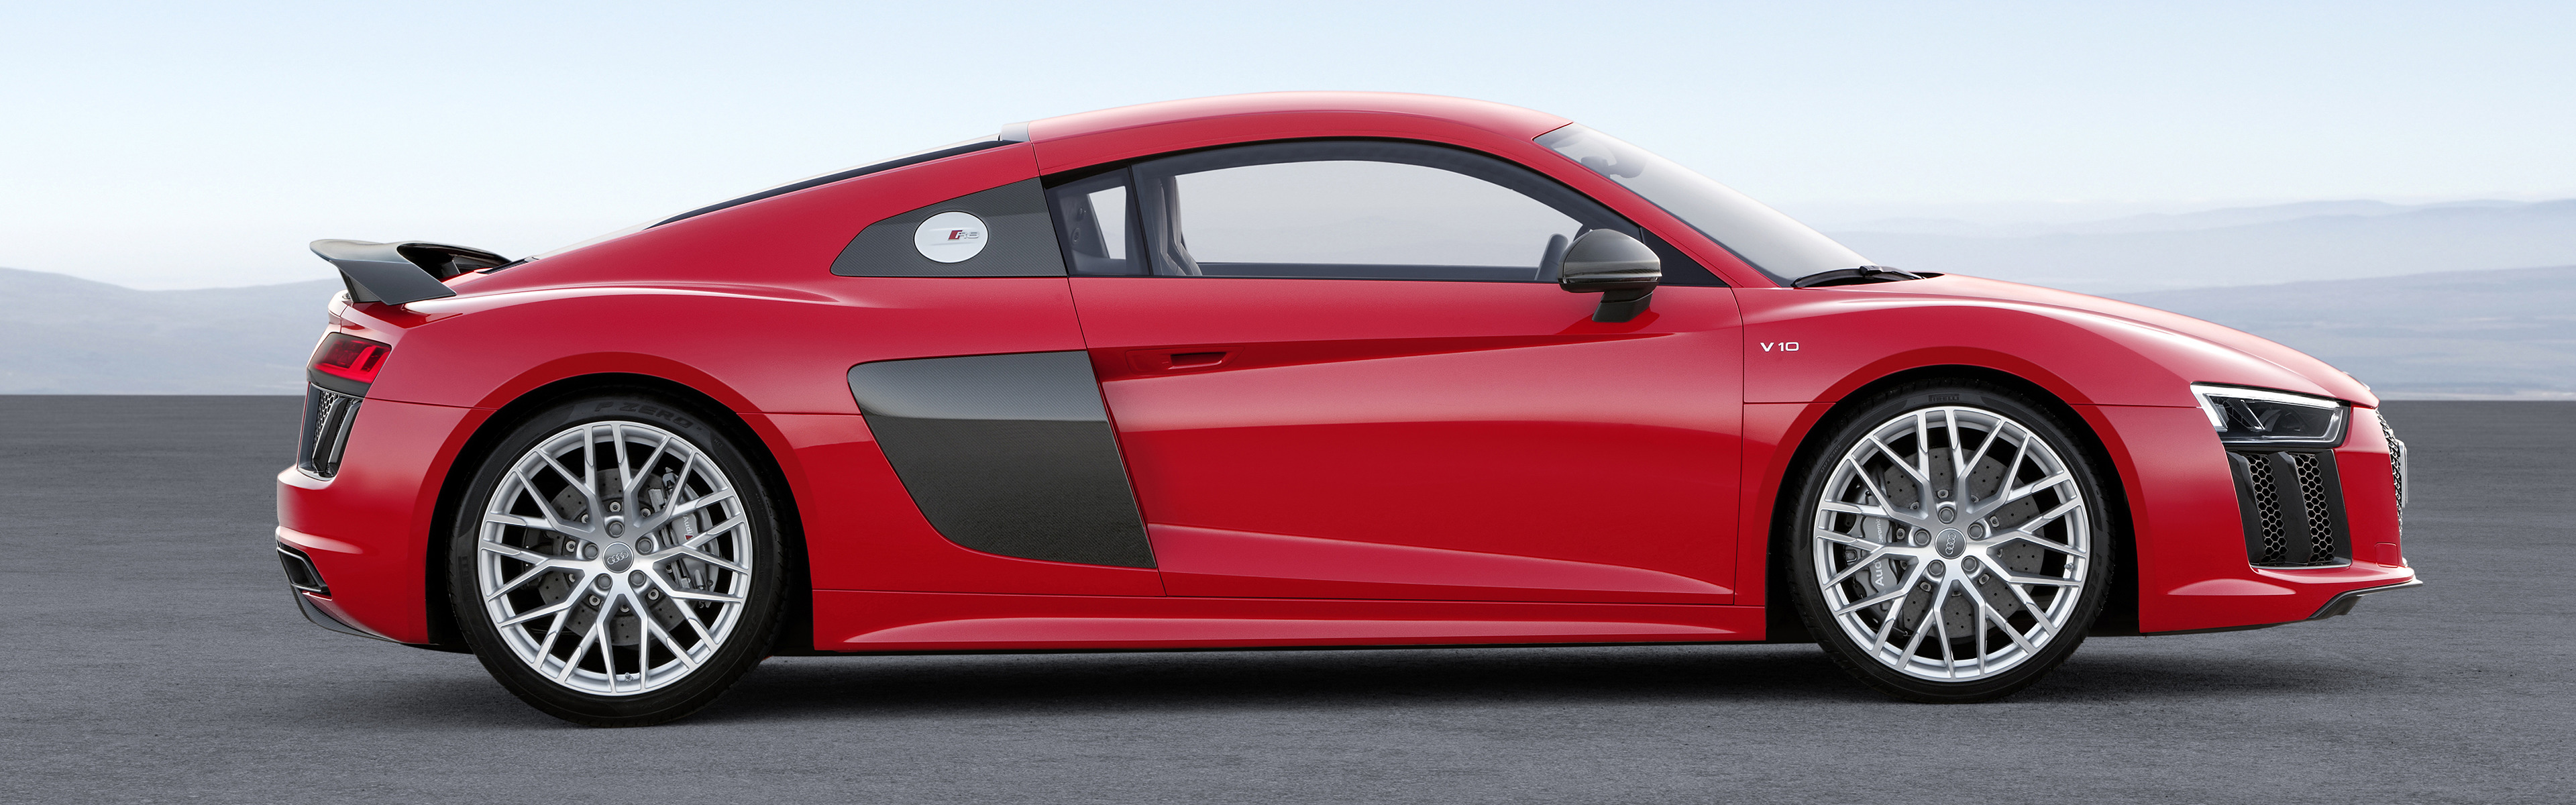 Audi R8, Car, Vehicle, Super Car, Dual Monitors, Multiple Display, Red Cars Wallpaper